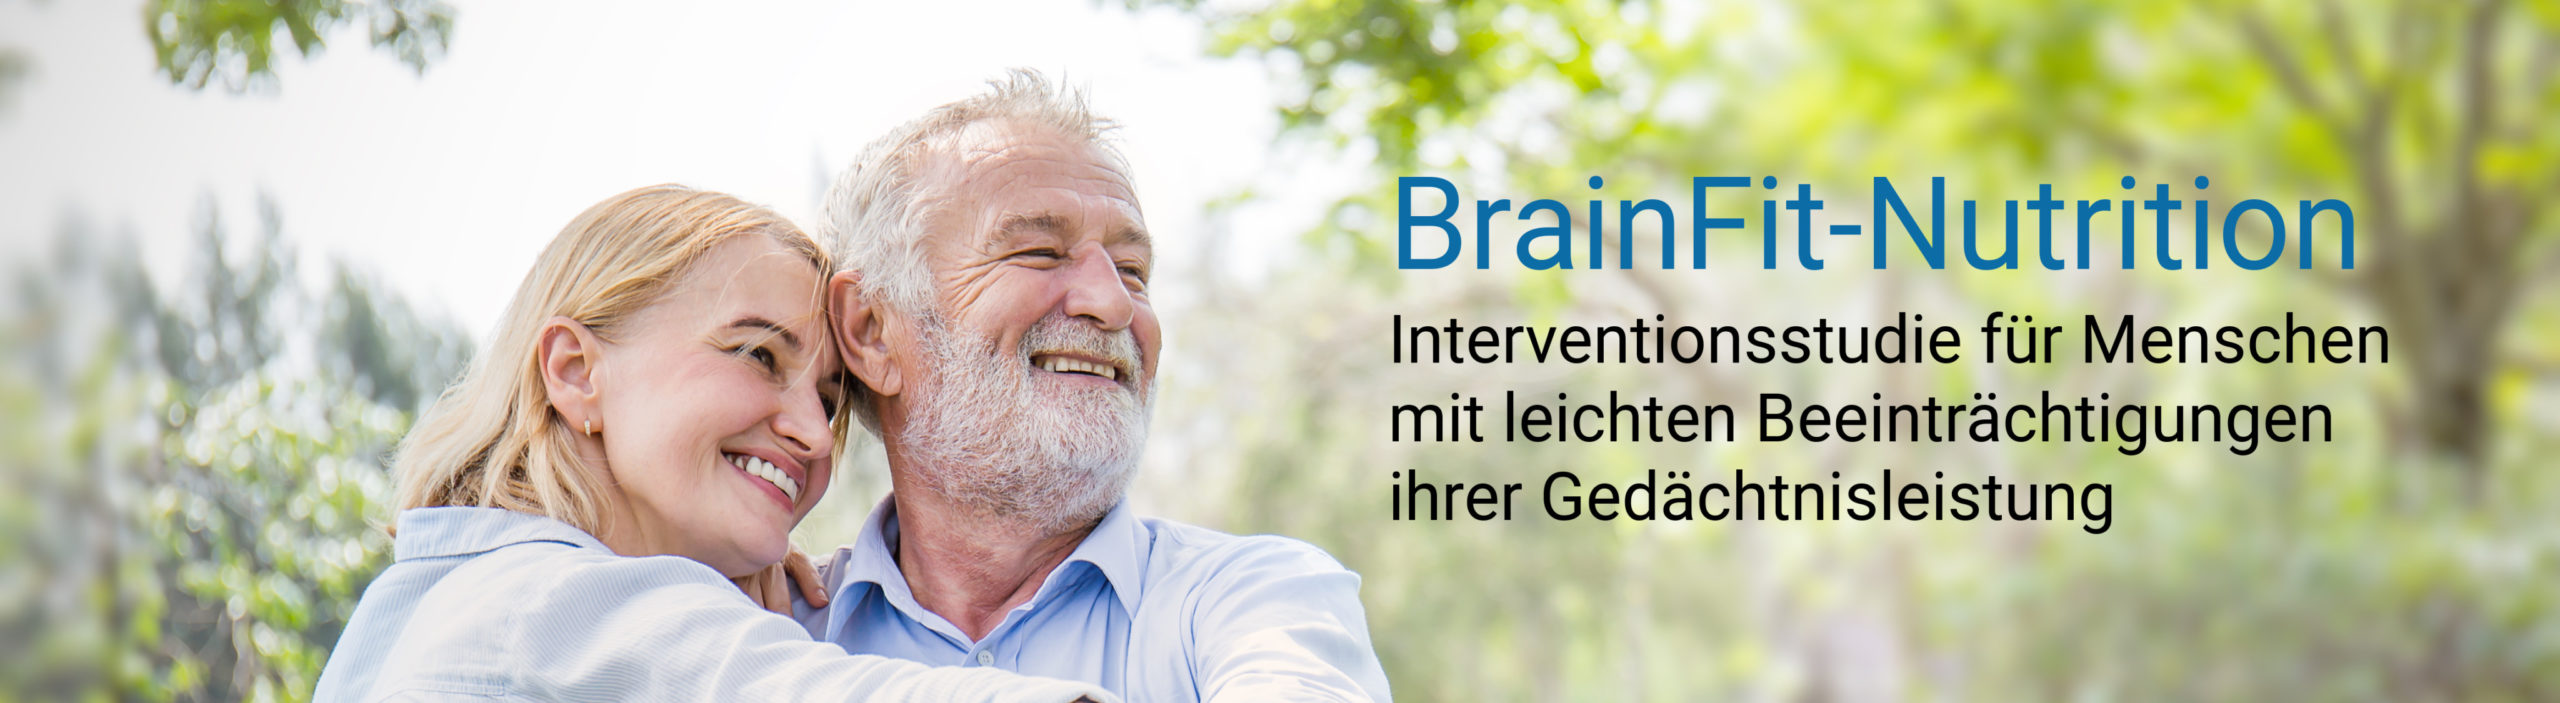 Dieser Bild zeigt ein lächelndes, sich umarmendes älteres Paar in der Natur. Auf dem Bild steht der Text: "BrainFit-Nutrition - Interventionsstudie für Menschen mit leichten Beeinträchtigungen ihrer Gedächtnisleistung".